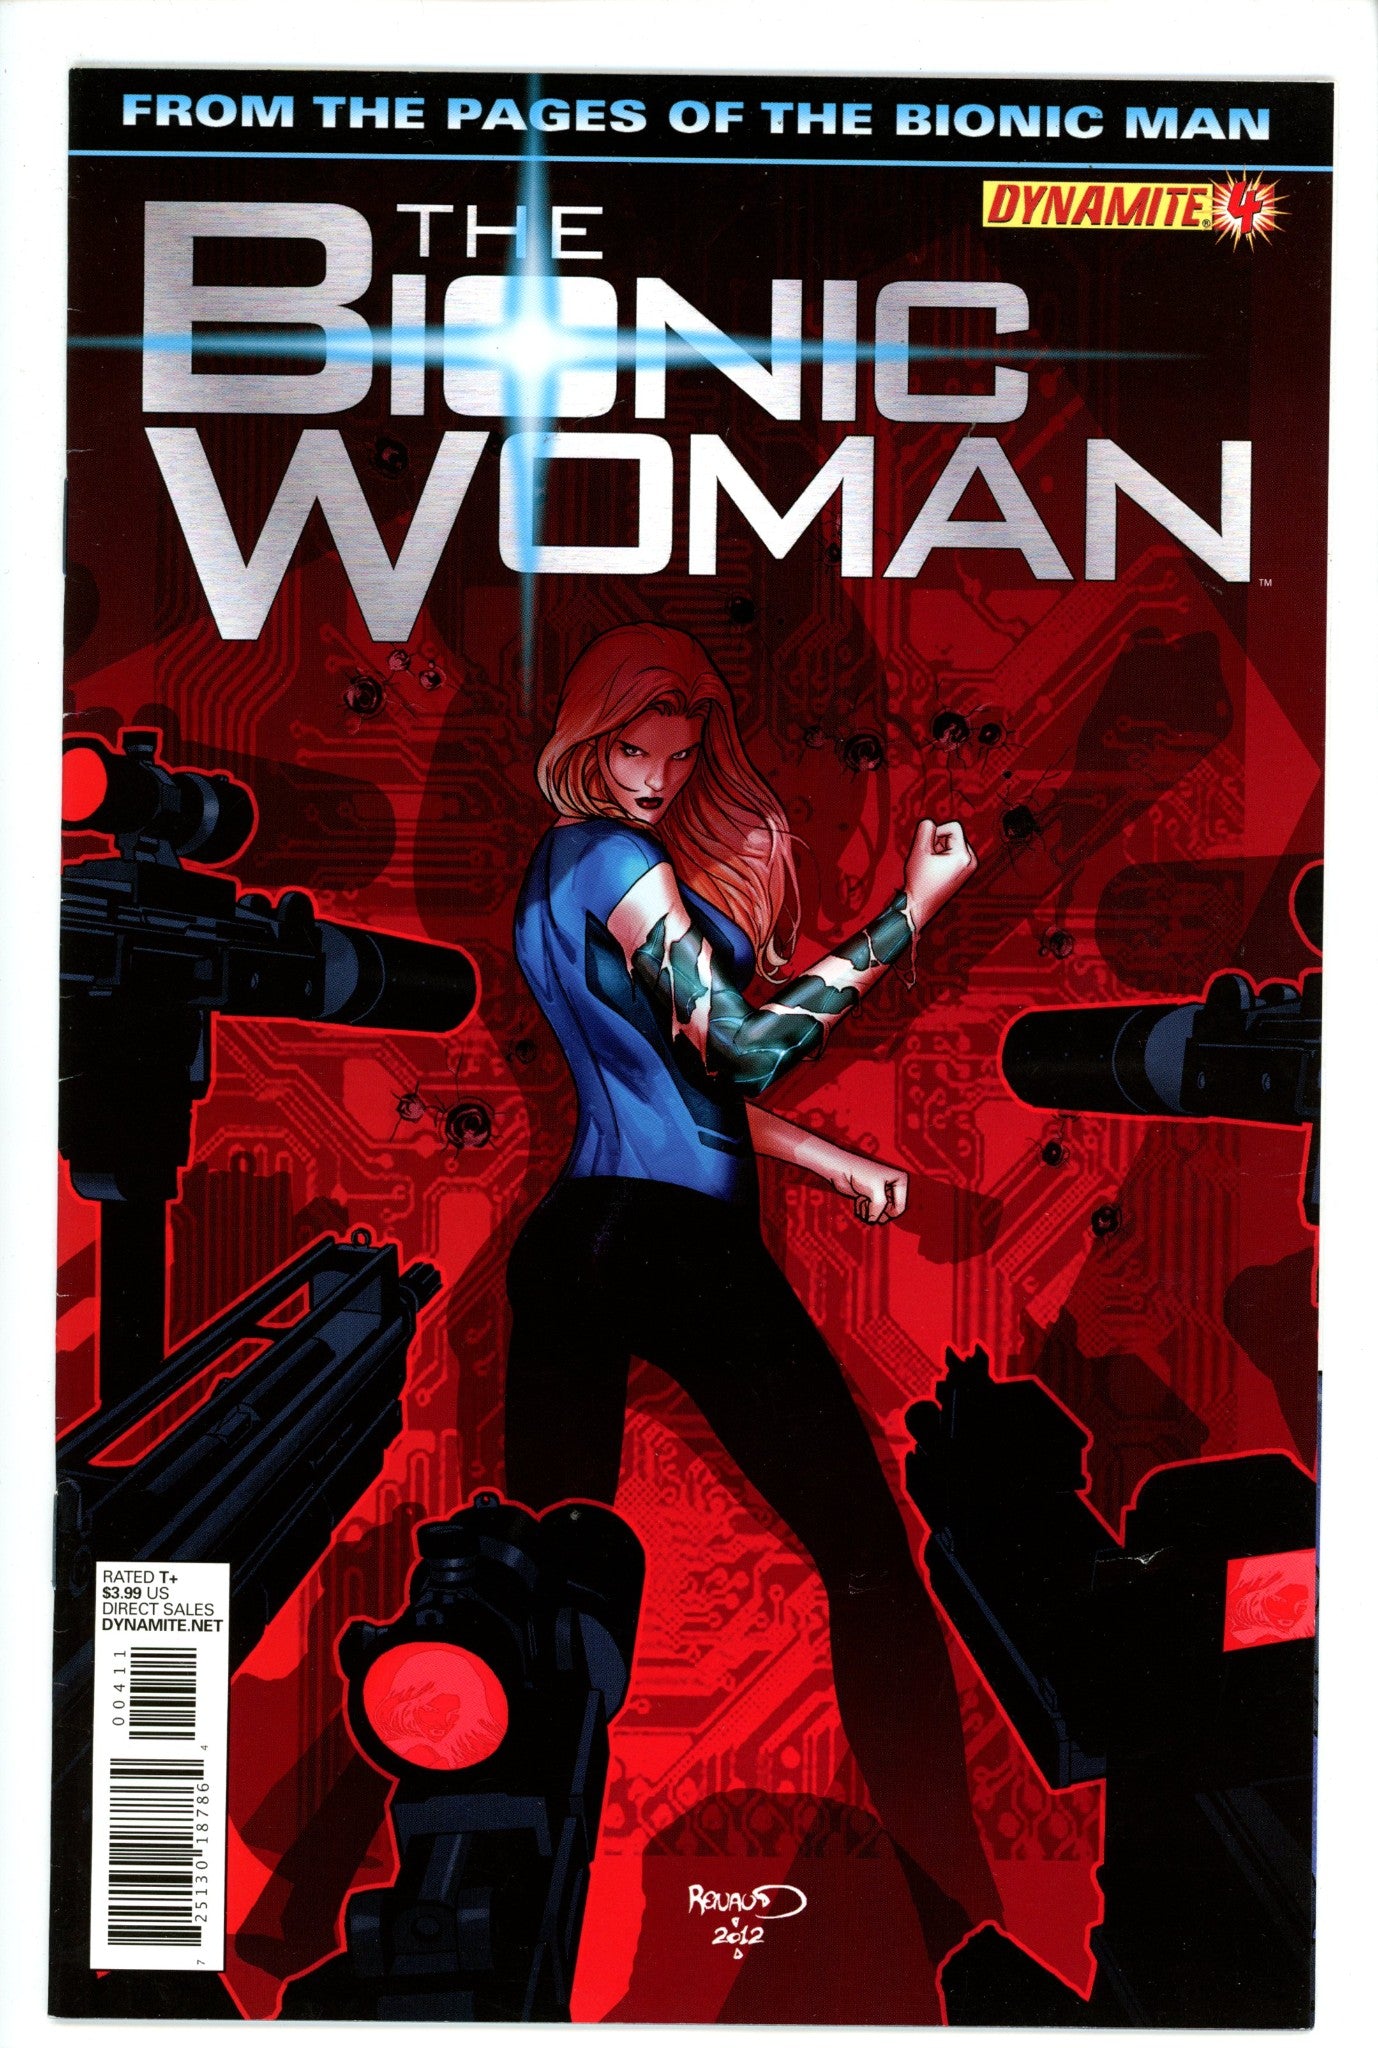 The Bionic Woman 4-Dynamite Entertainment-CaptCan Comics Inc